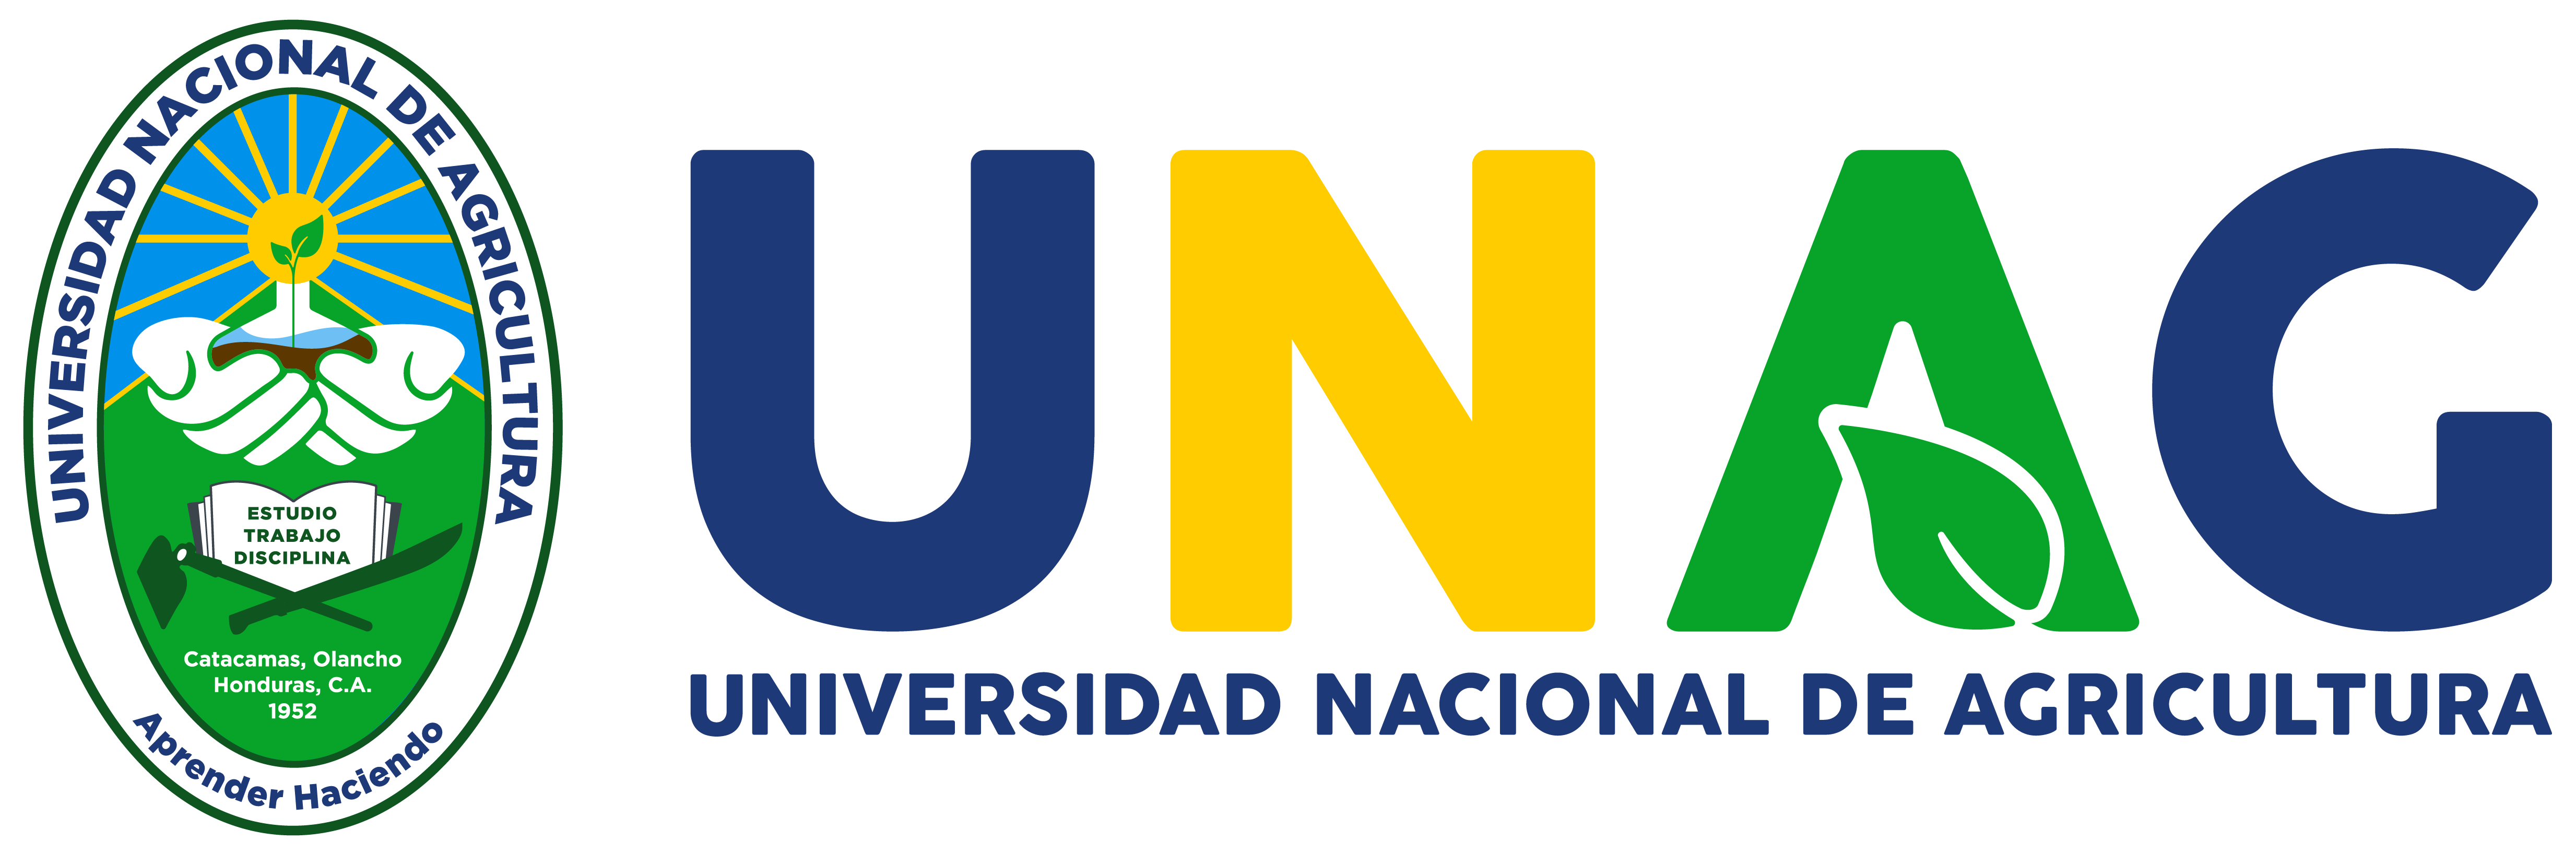 Universidad Nacional de Agricultura (UNAG) - Honduras